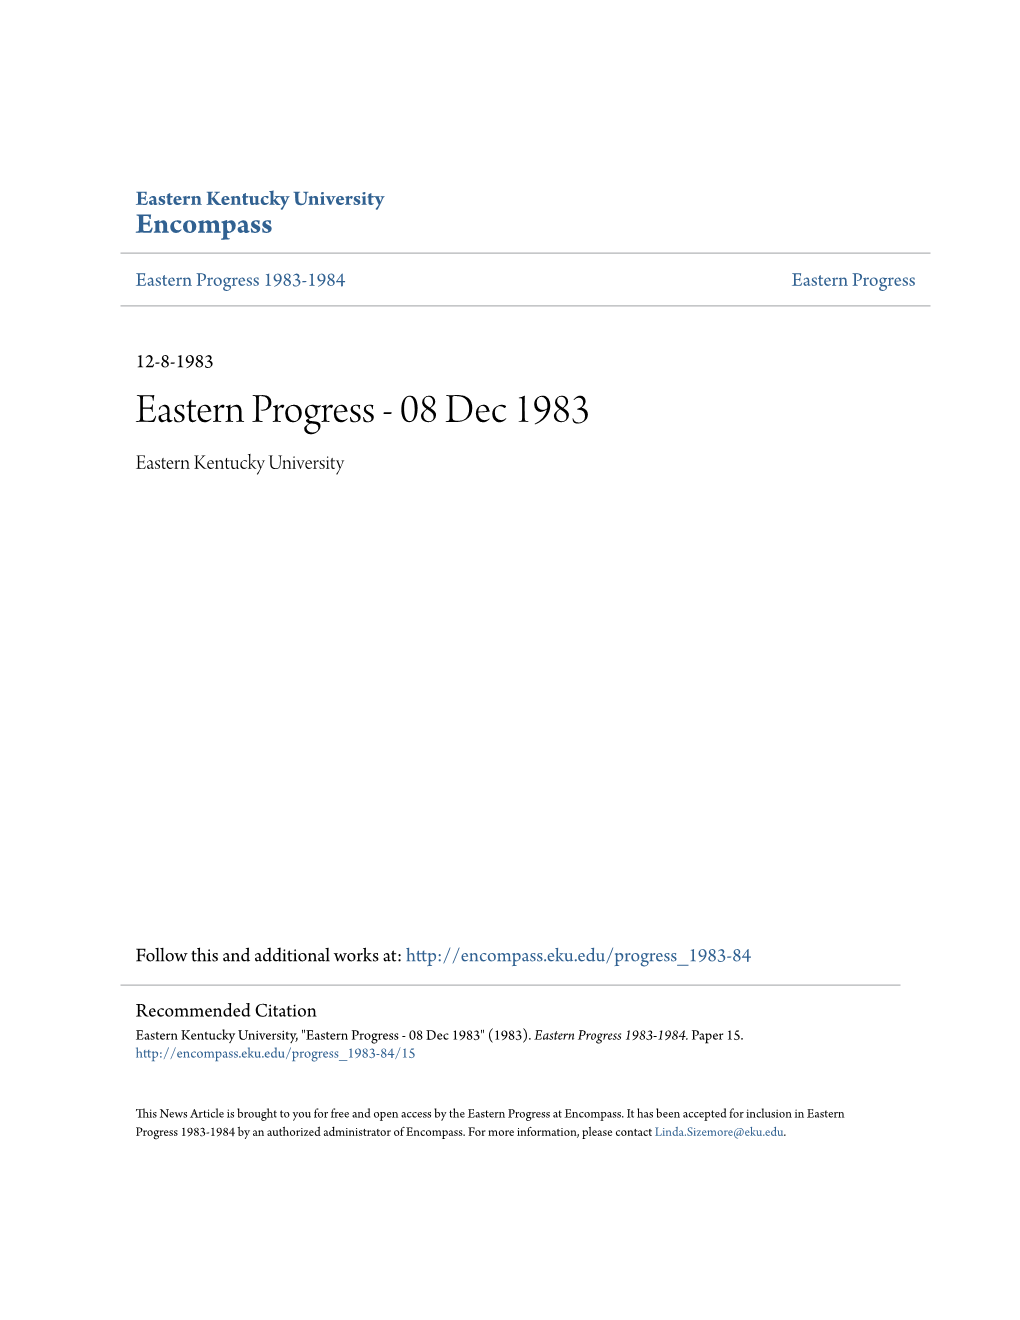 Eastern Progress 1983-1984 Eastern Progress